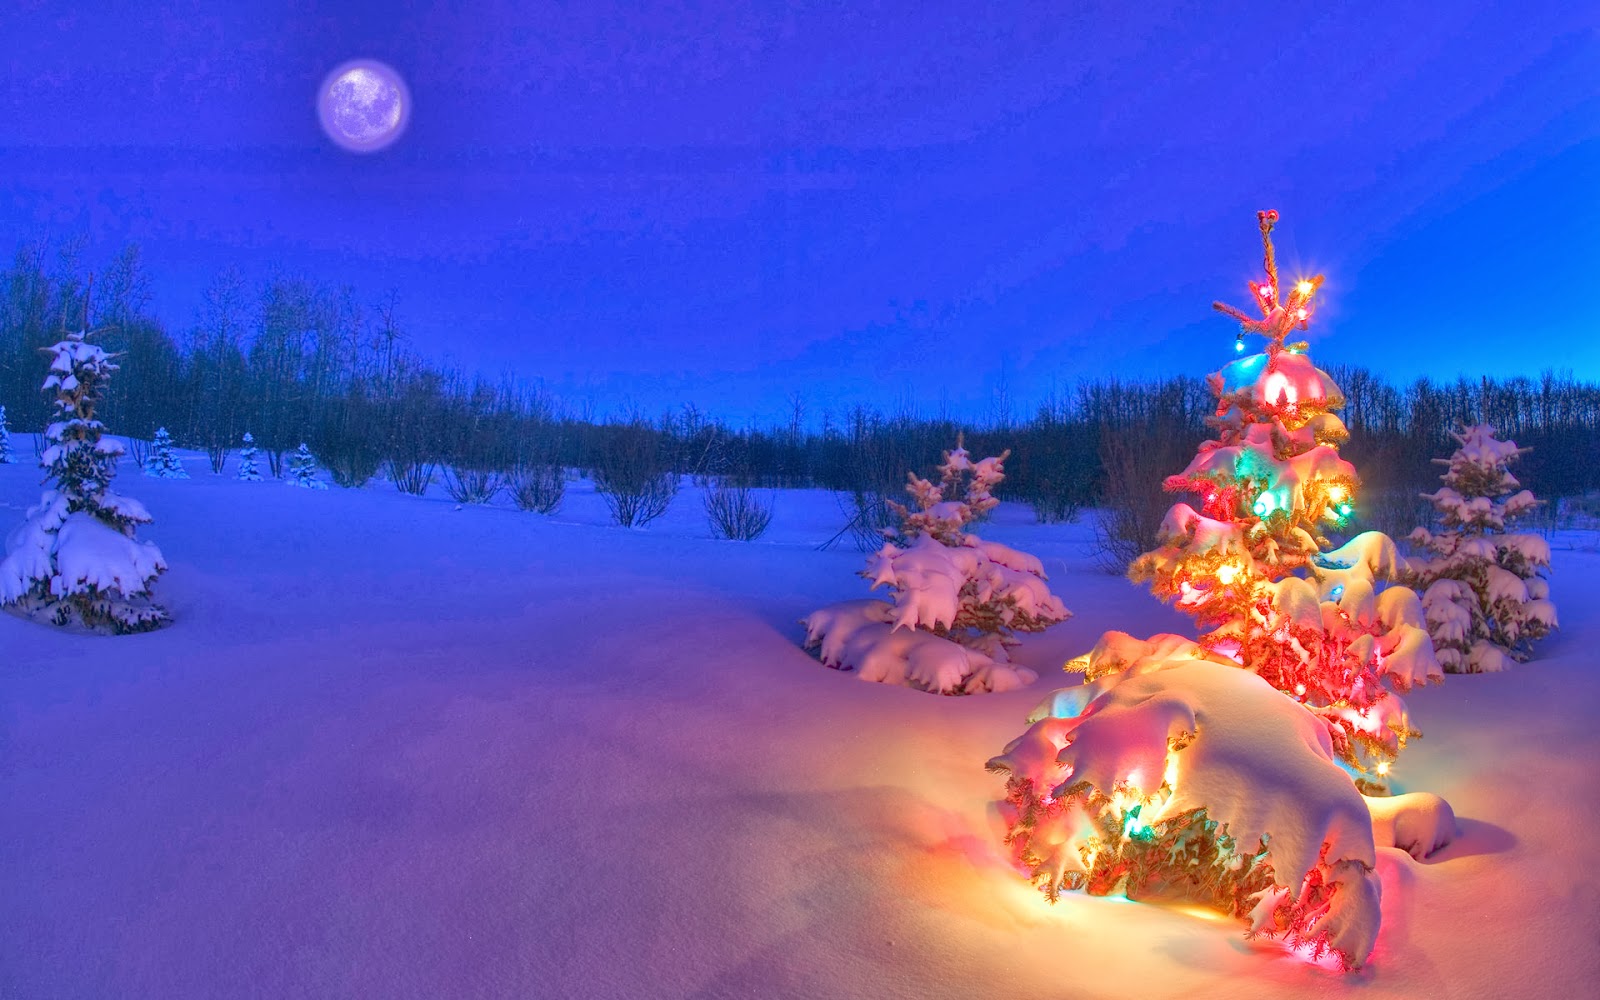 クリスマスの夜の壁紙,クリスマスツリー,冬,雪,空,光